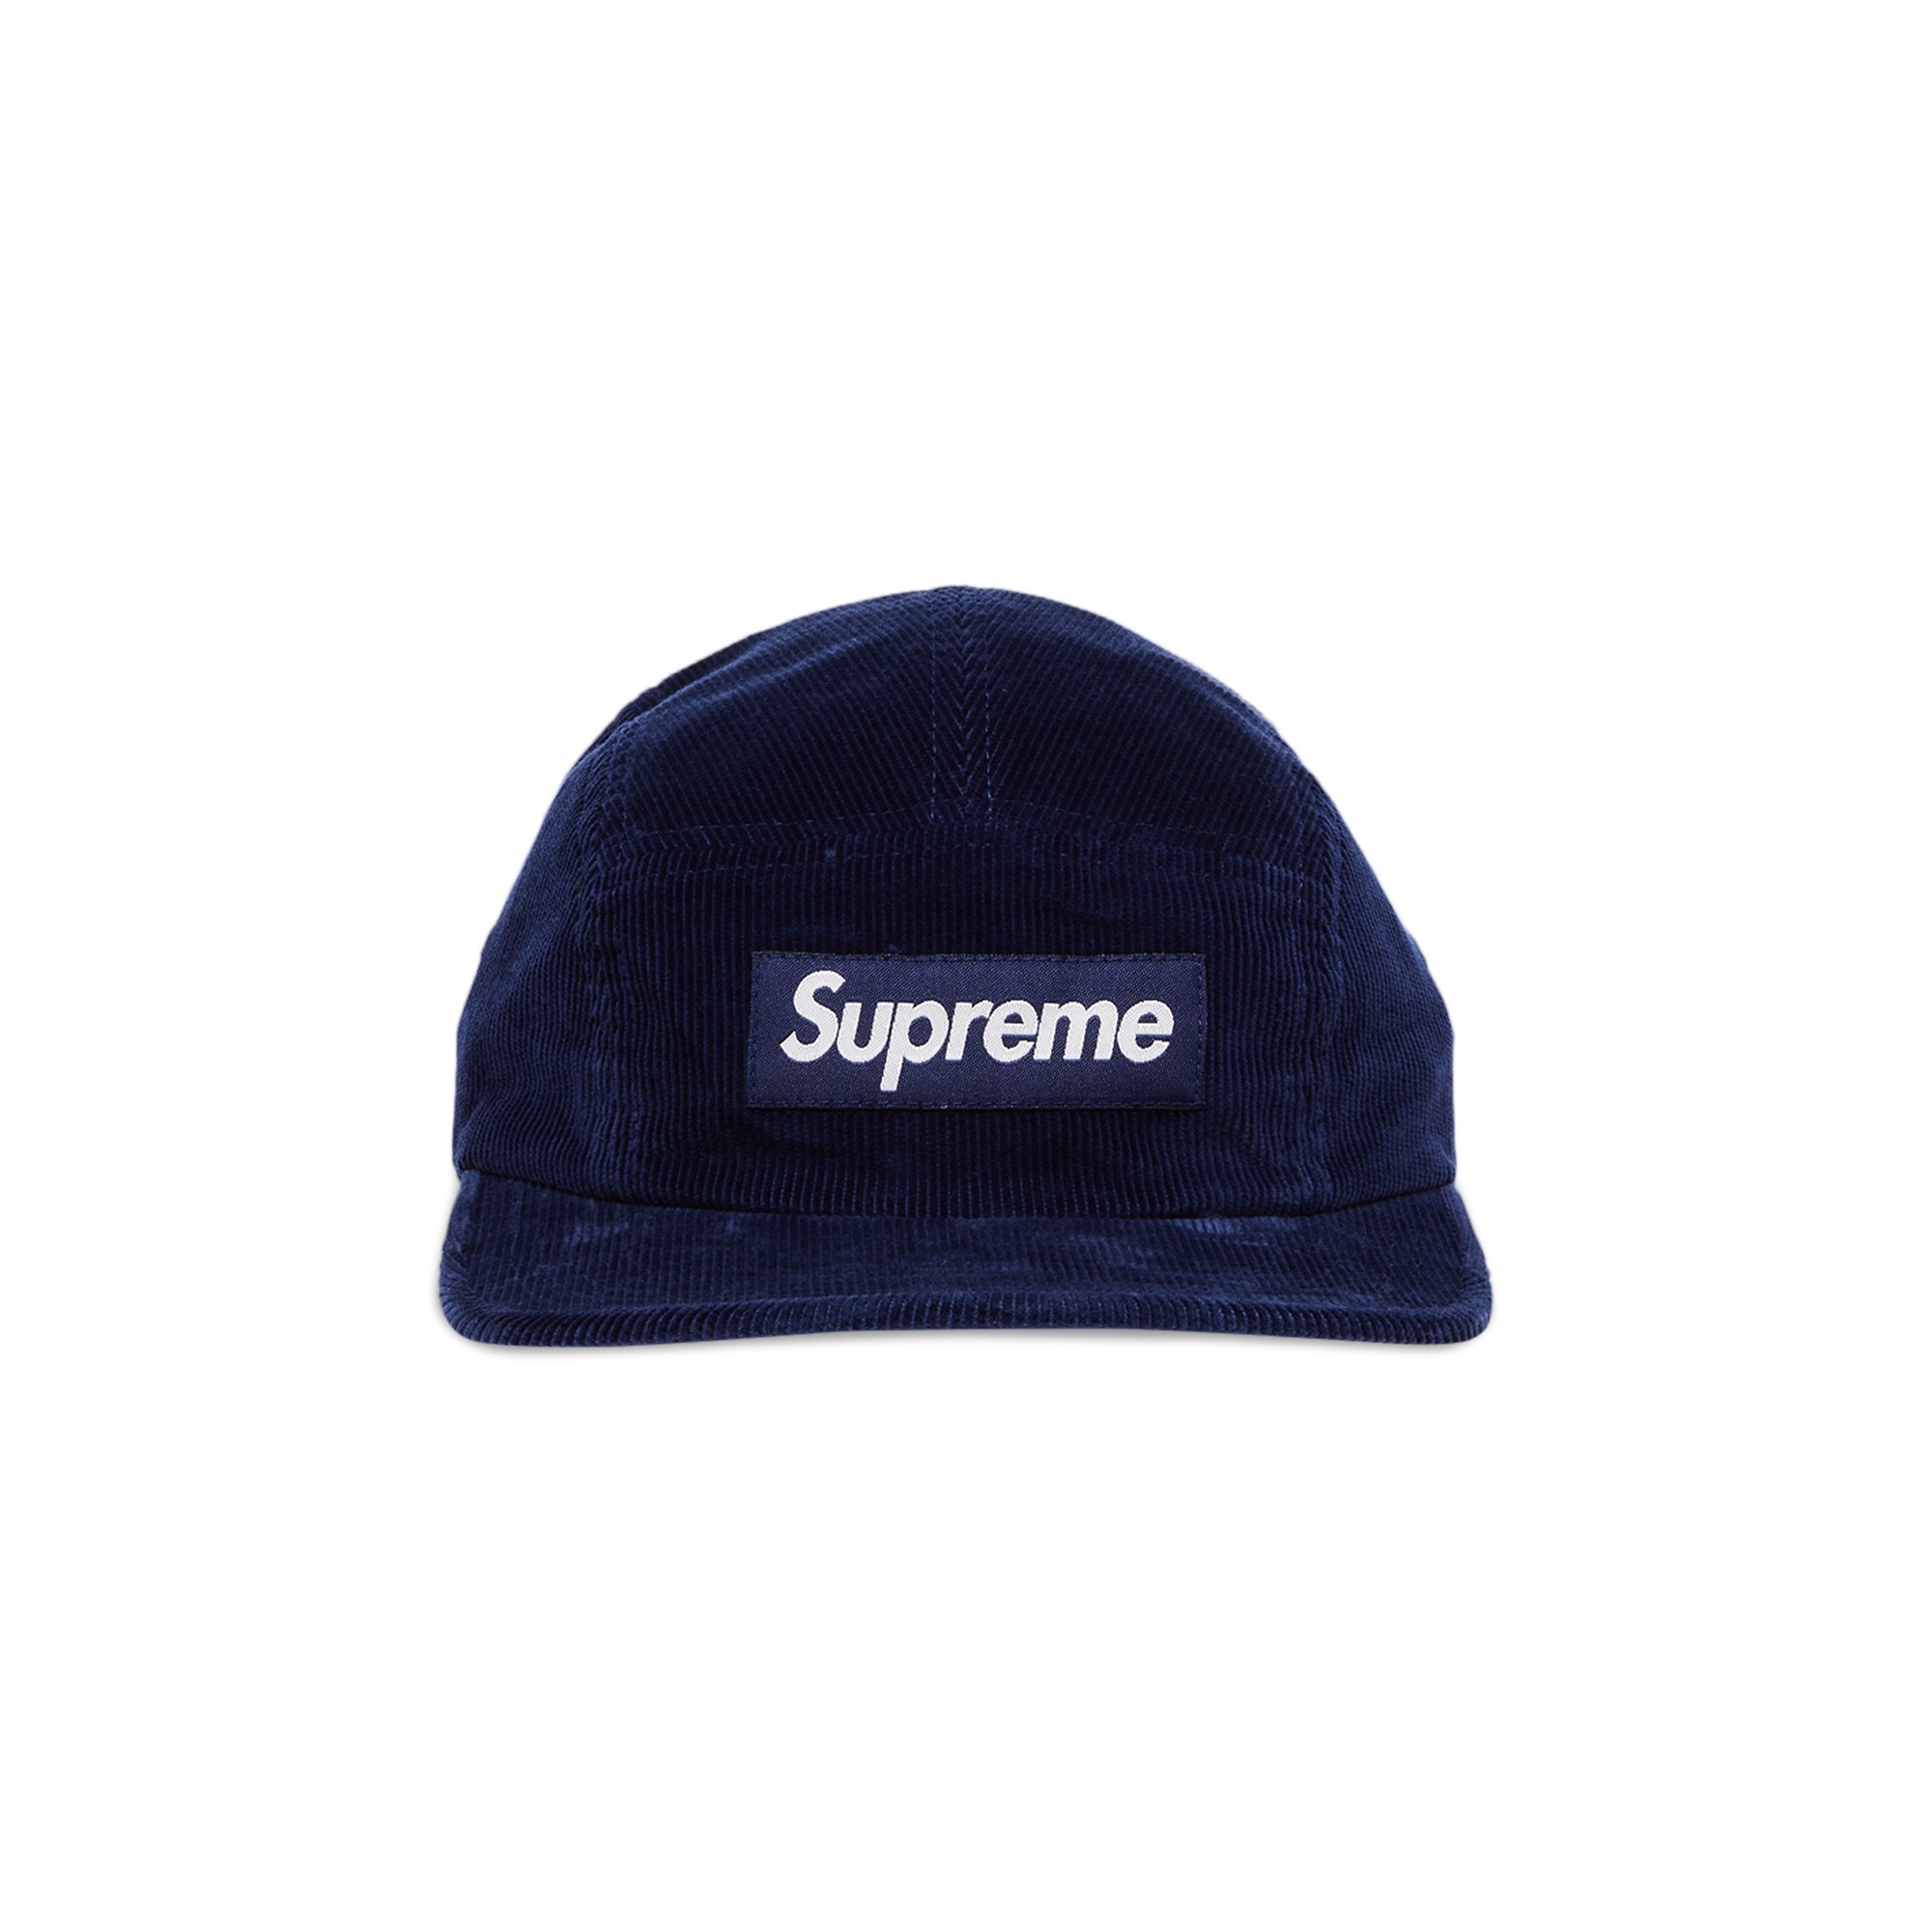 Вельветовая кепка Supreme, темно-синяя